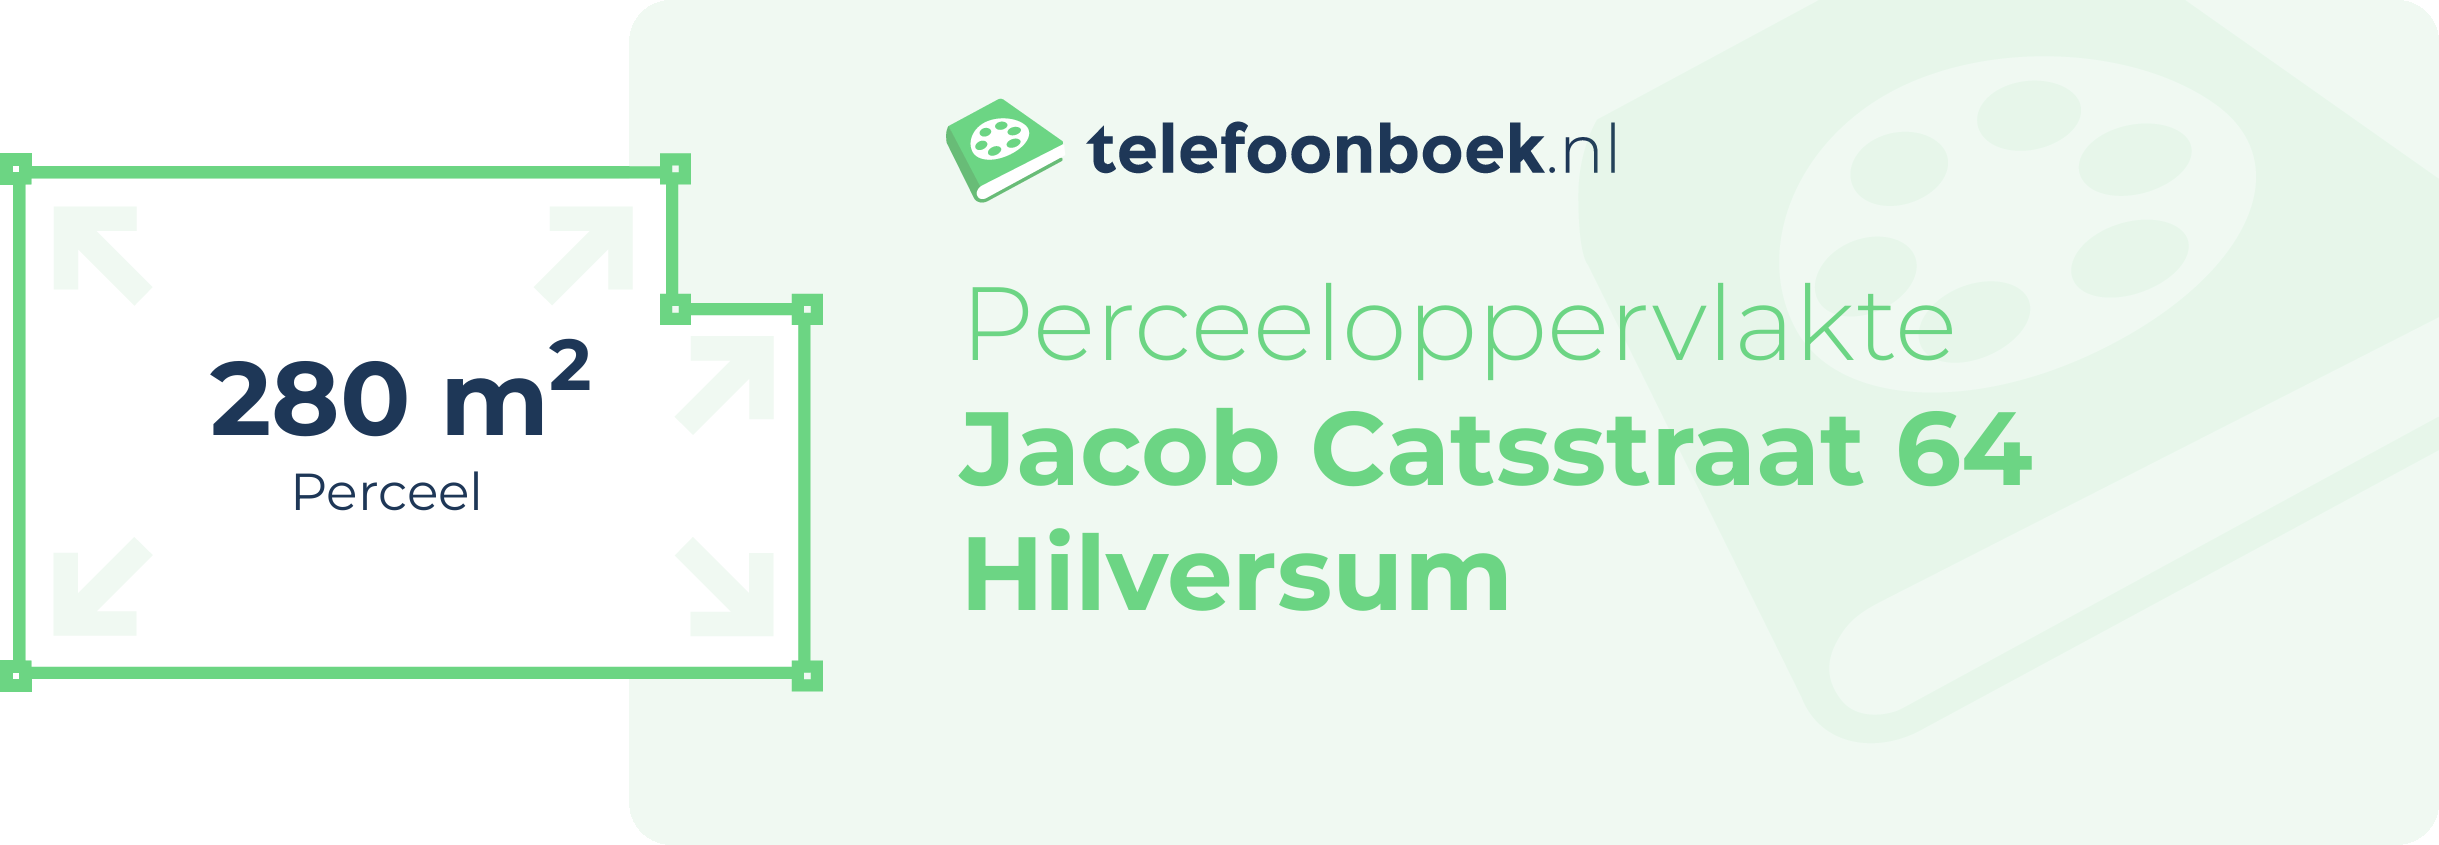 Perceeloppervlakte Jacob Catsstraat 64 Hilversum